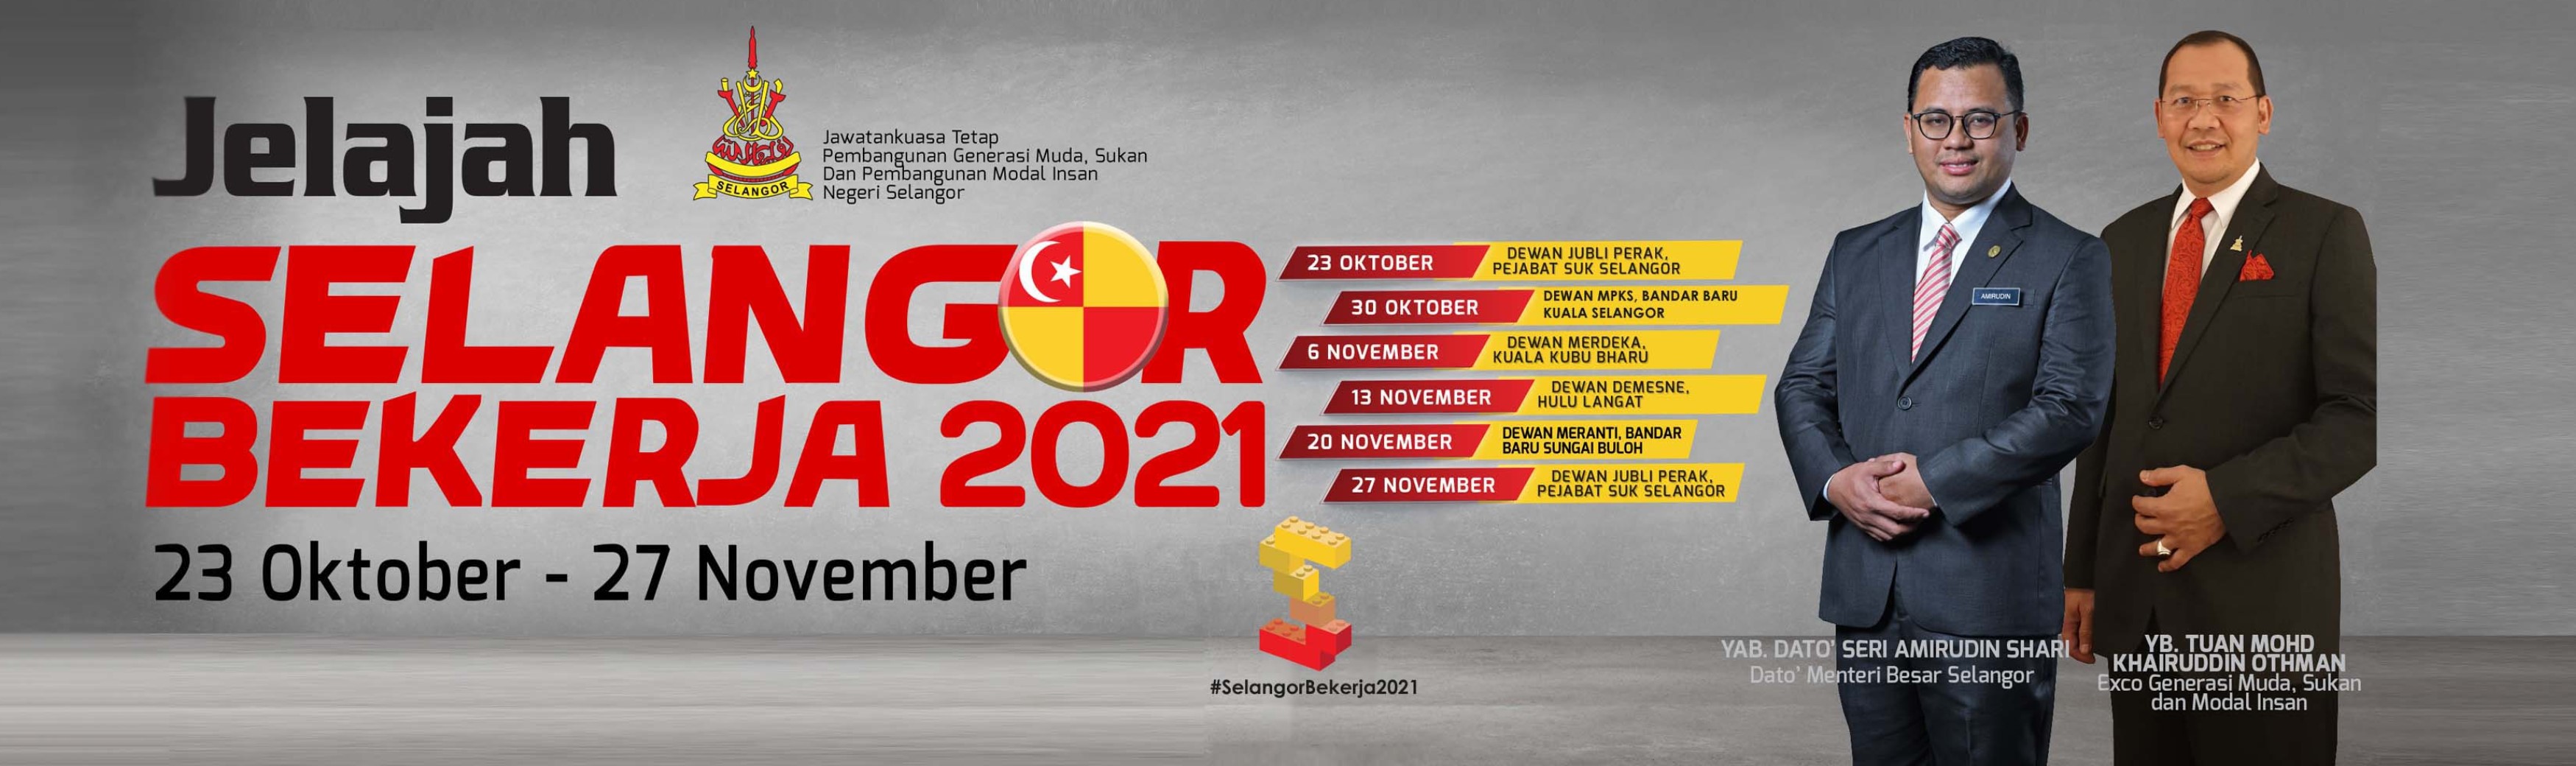 Jelajah Selangor Bekerja 2021